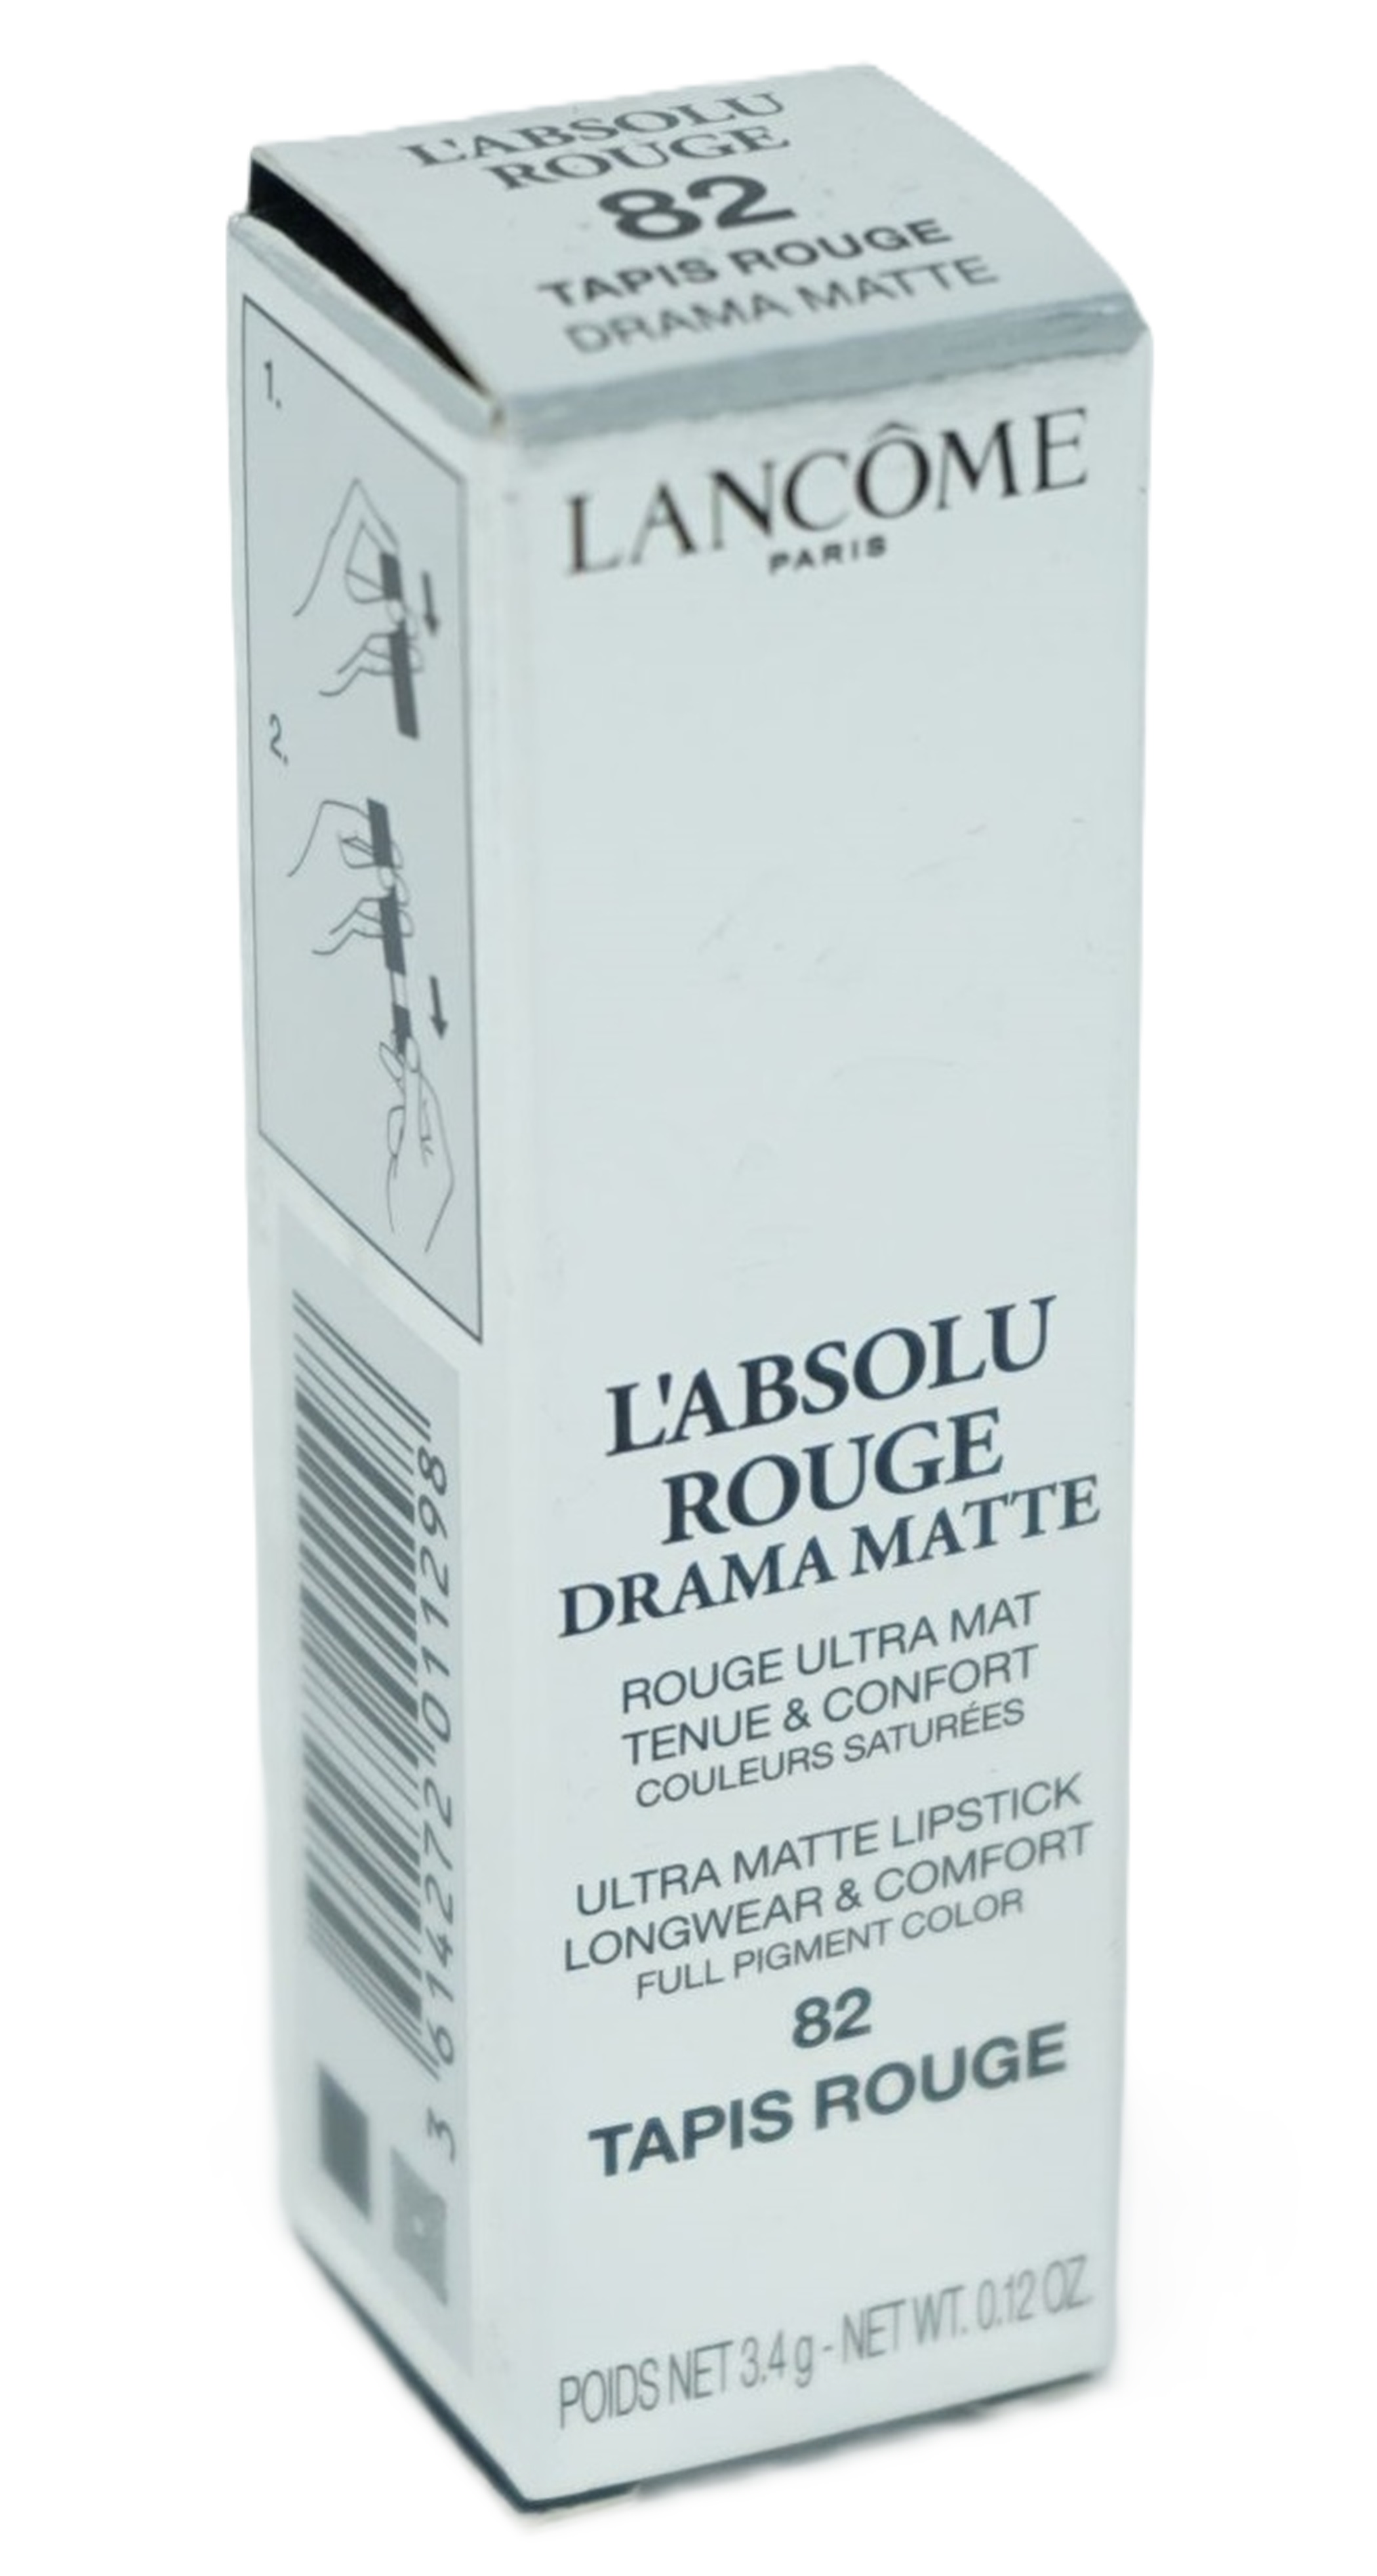 Lancome L'Absolu Rouge Drama Matte Lipstick 3,4g/ 82 Drama Matte